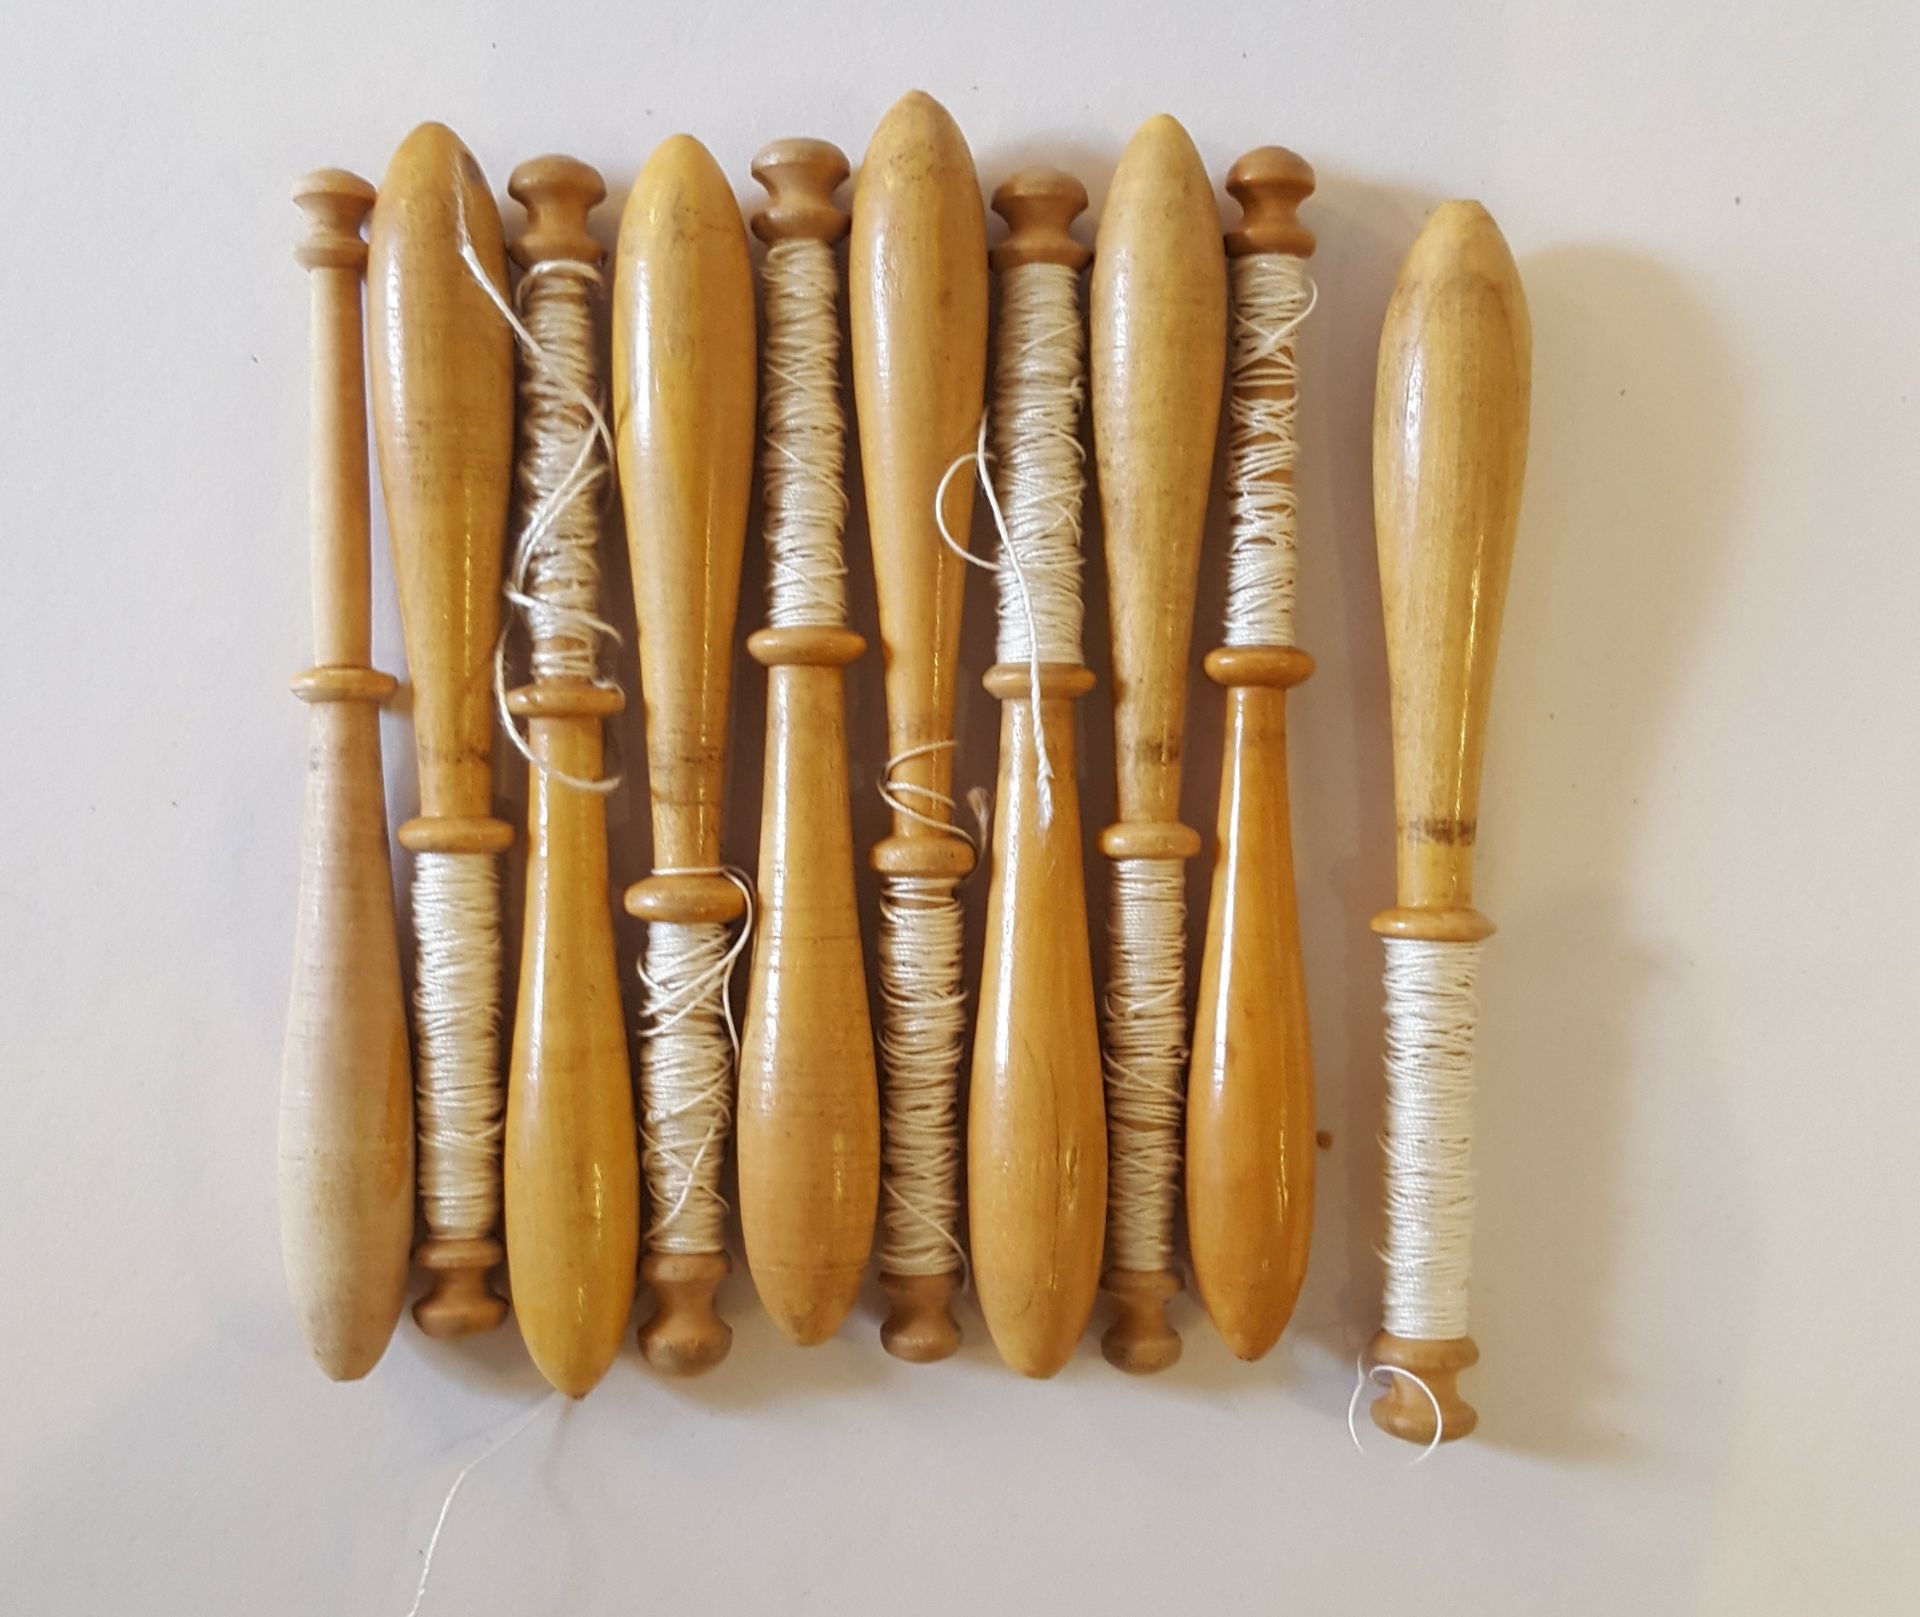 10 Vintage Wooden Lace Bobbins 7cm to 10cm long